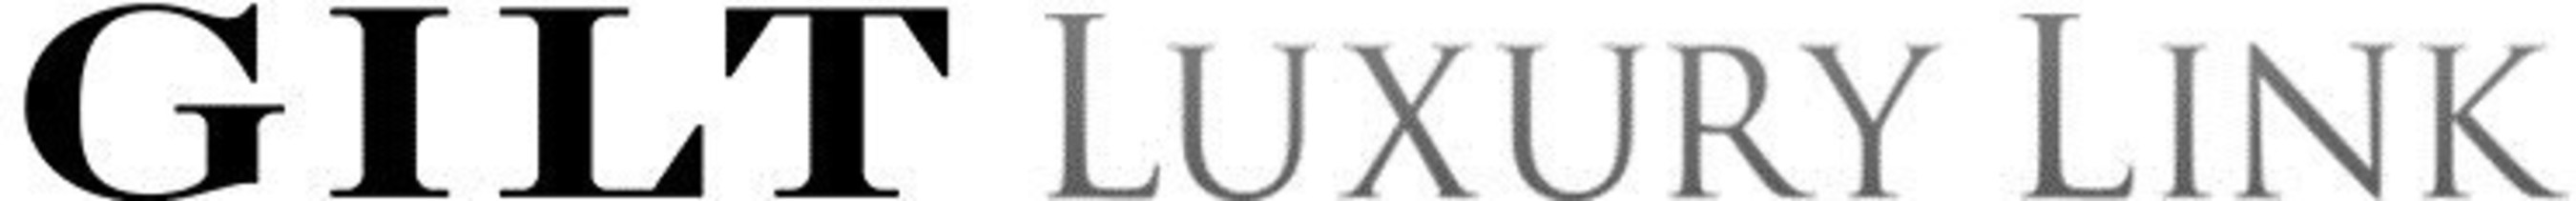 Gilt.com and LuxuryLink.com logos